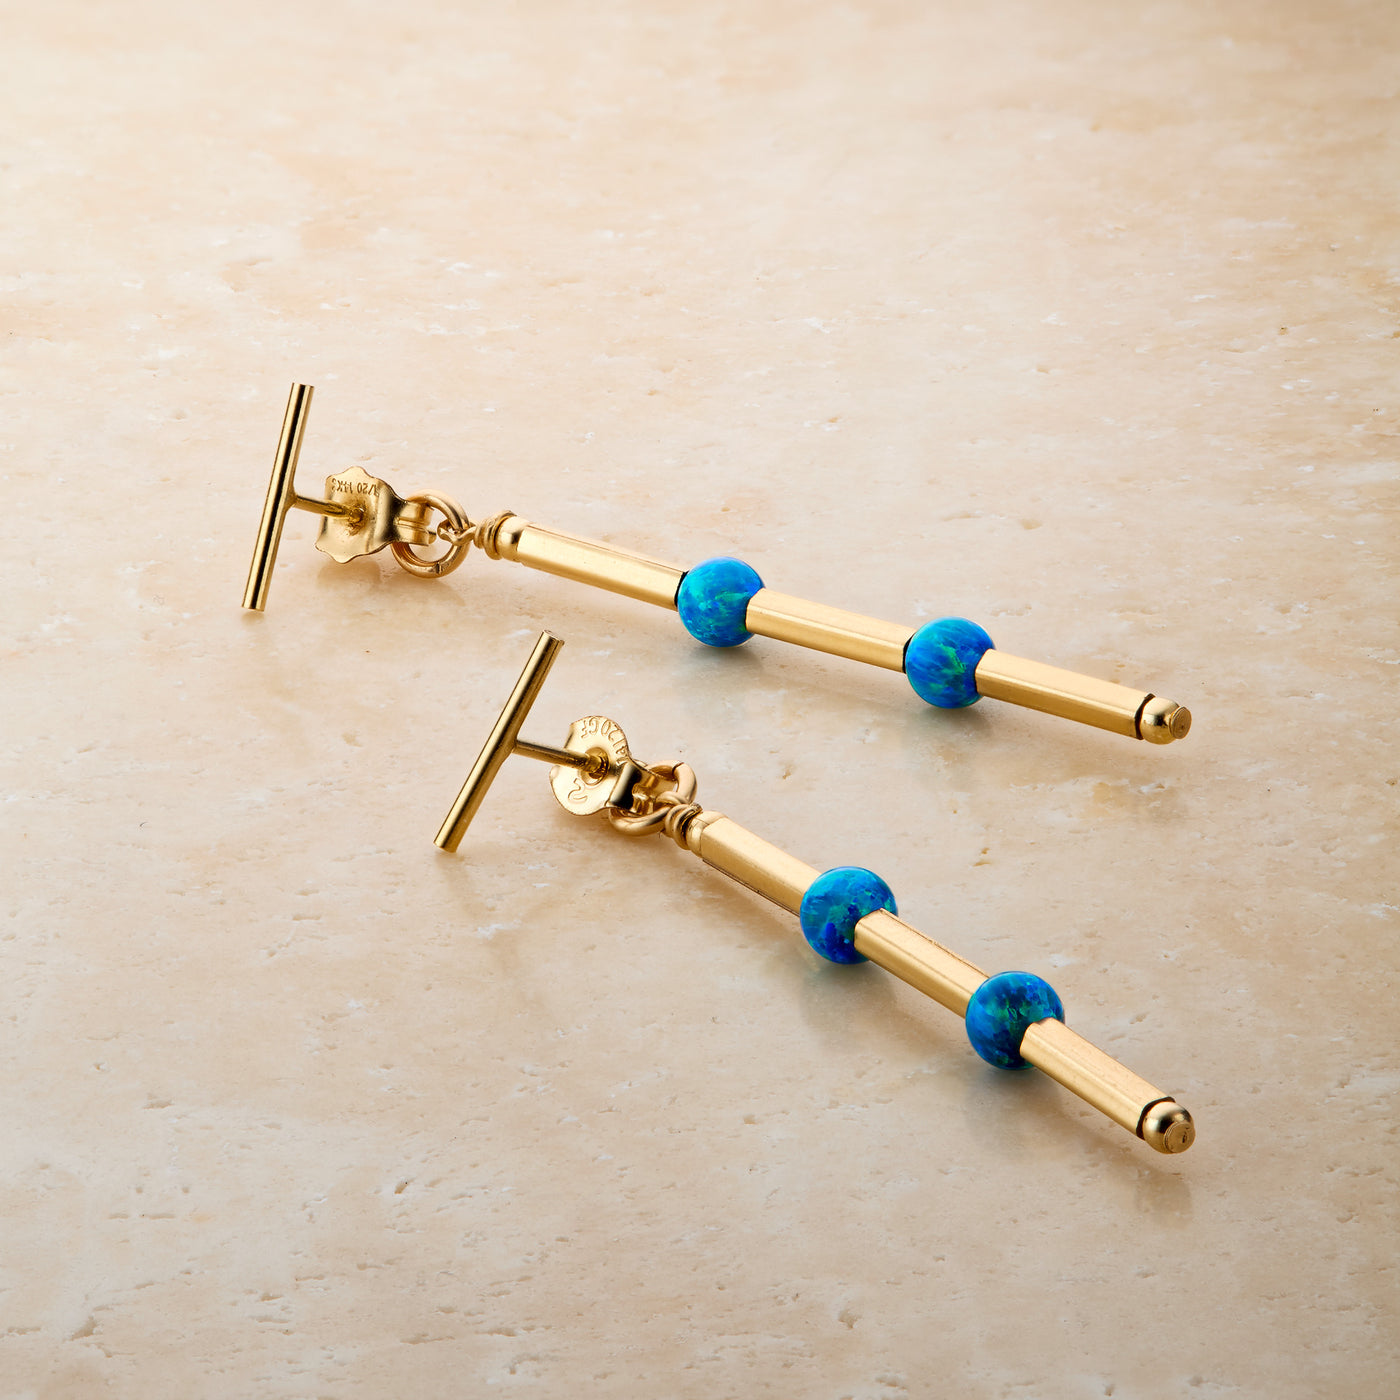 14kt GoldFill/Opal Ocean Linear Earrings - Long